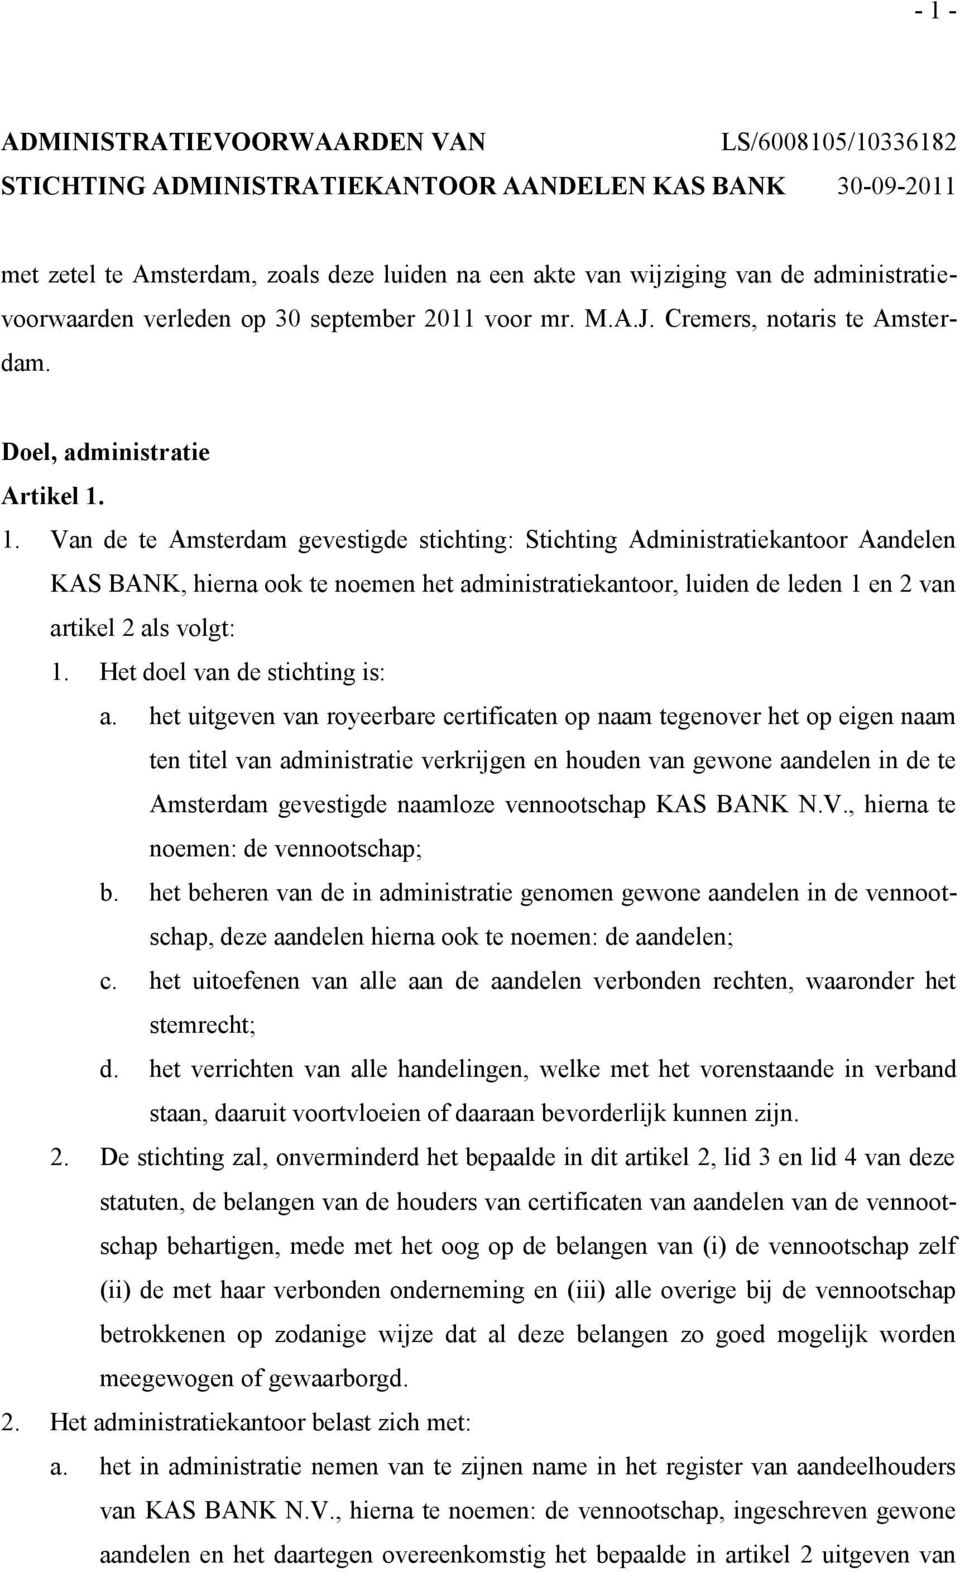 1. Van de te Amsterdam gevestigde stichting: Stichting Administratiekantoor Aandelen KAS BANK, hierna ook te noemen het administratiekantoor, luiden de leden 1 en 2 van artikel 2 als volgt: 1.